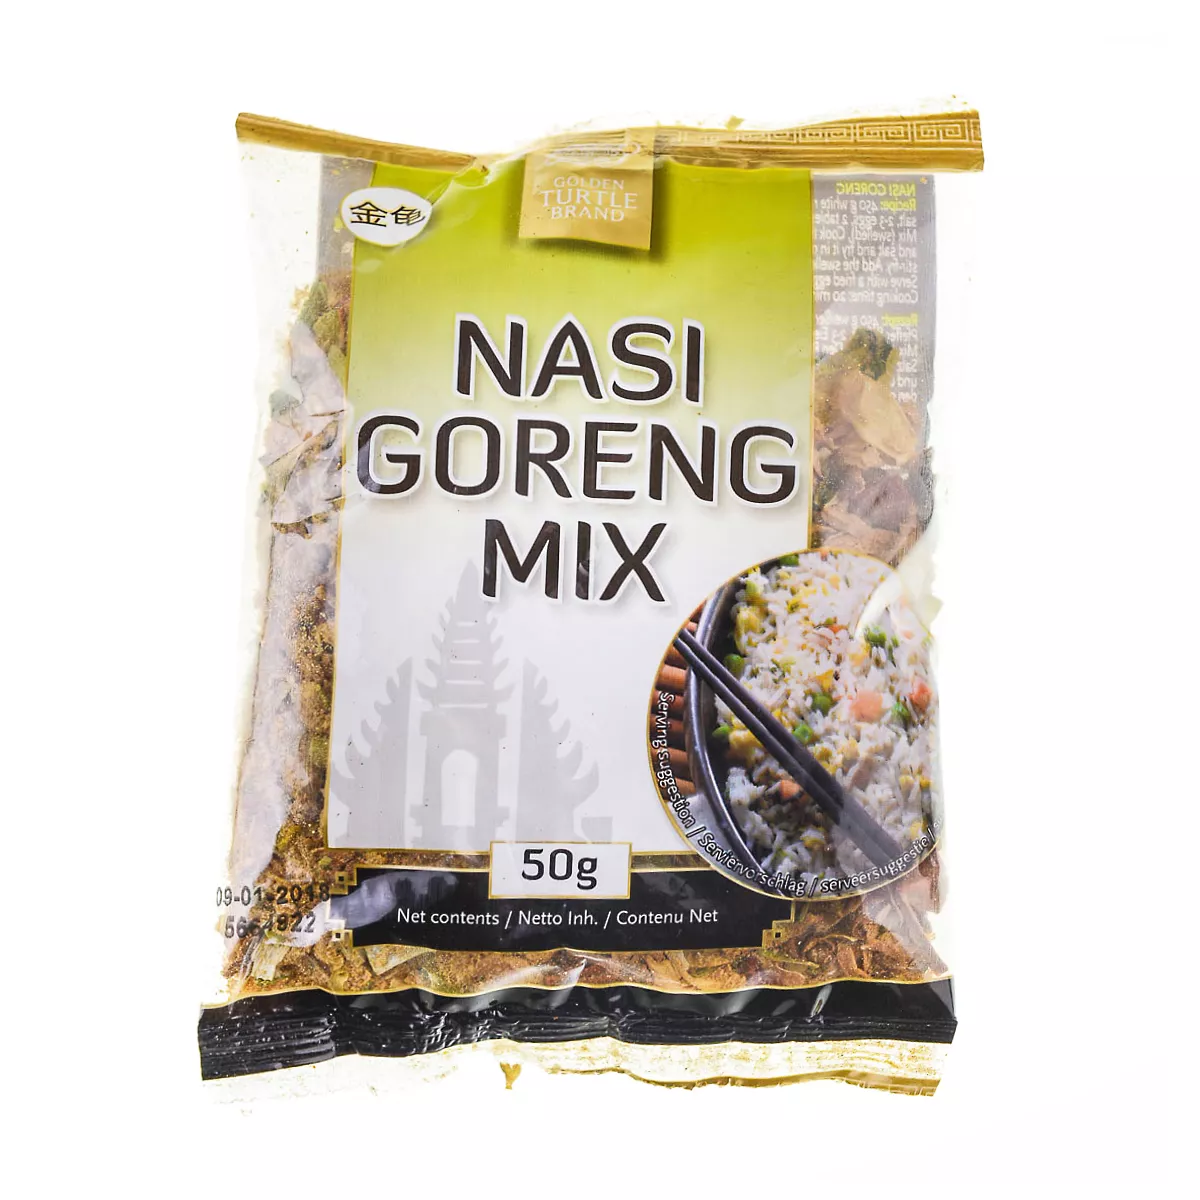 Mix Nasi Goreng GT 50g, [],asianfood.ro